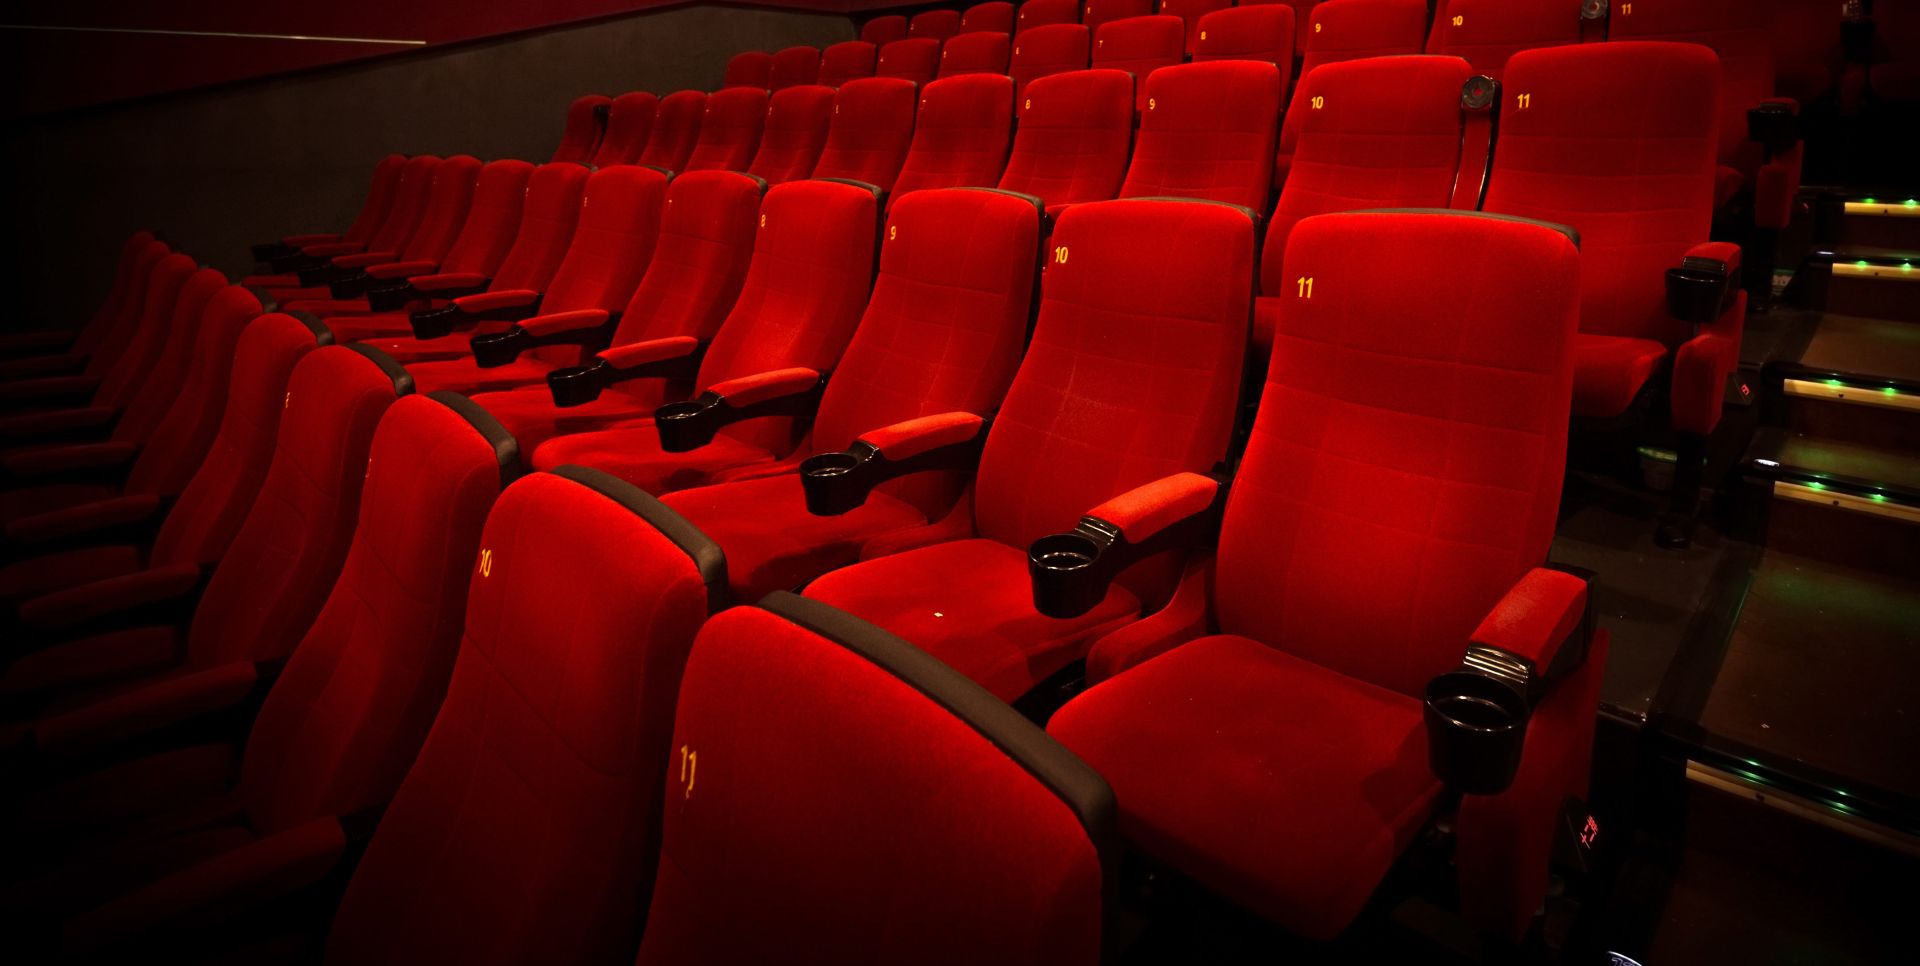 Αιθοτσα κινηματογραφου με κοκκινα καθισματα